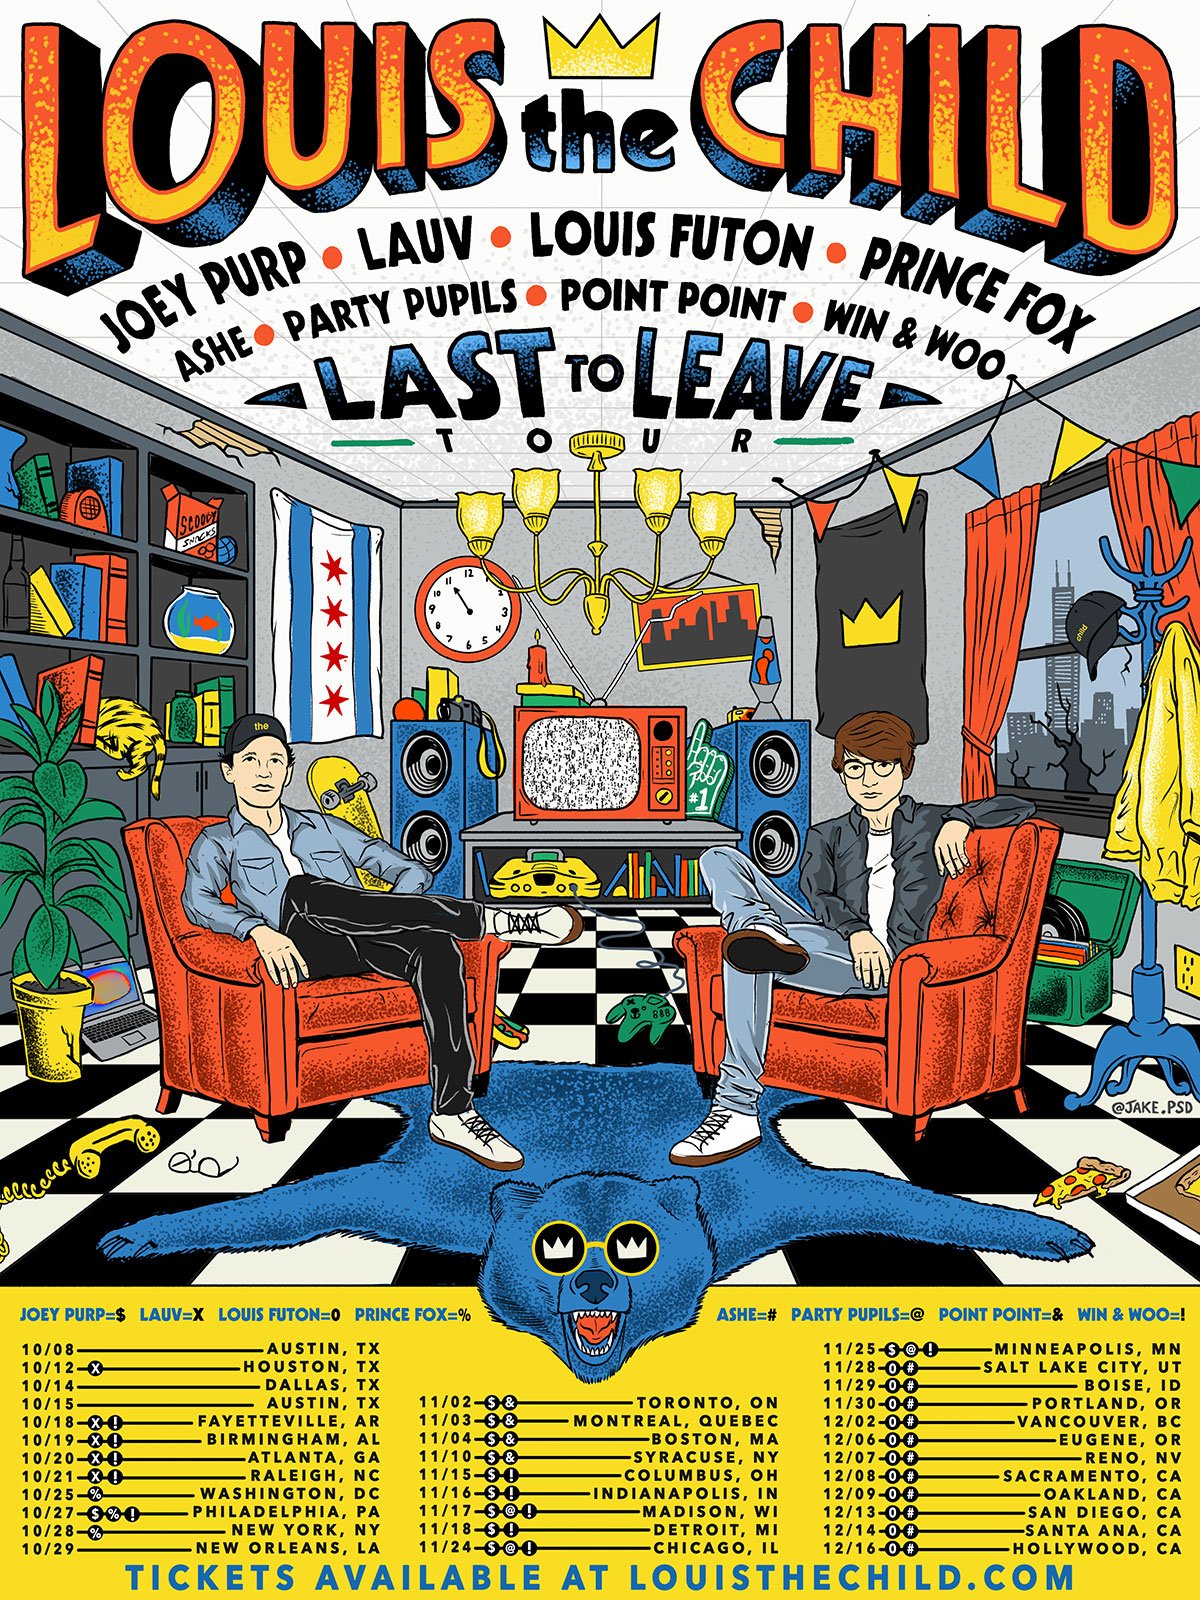 Louis The Child Announces “Last To Leave” Tour Ft. Prince Fox, Louis Futon & More!